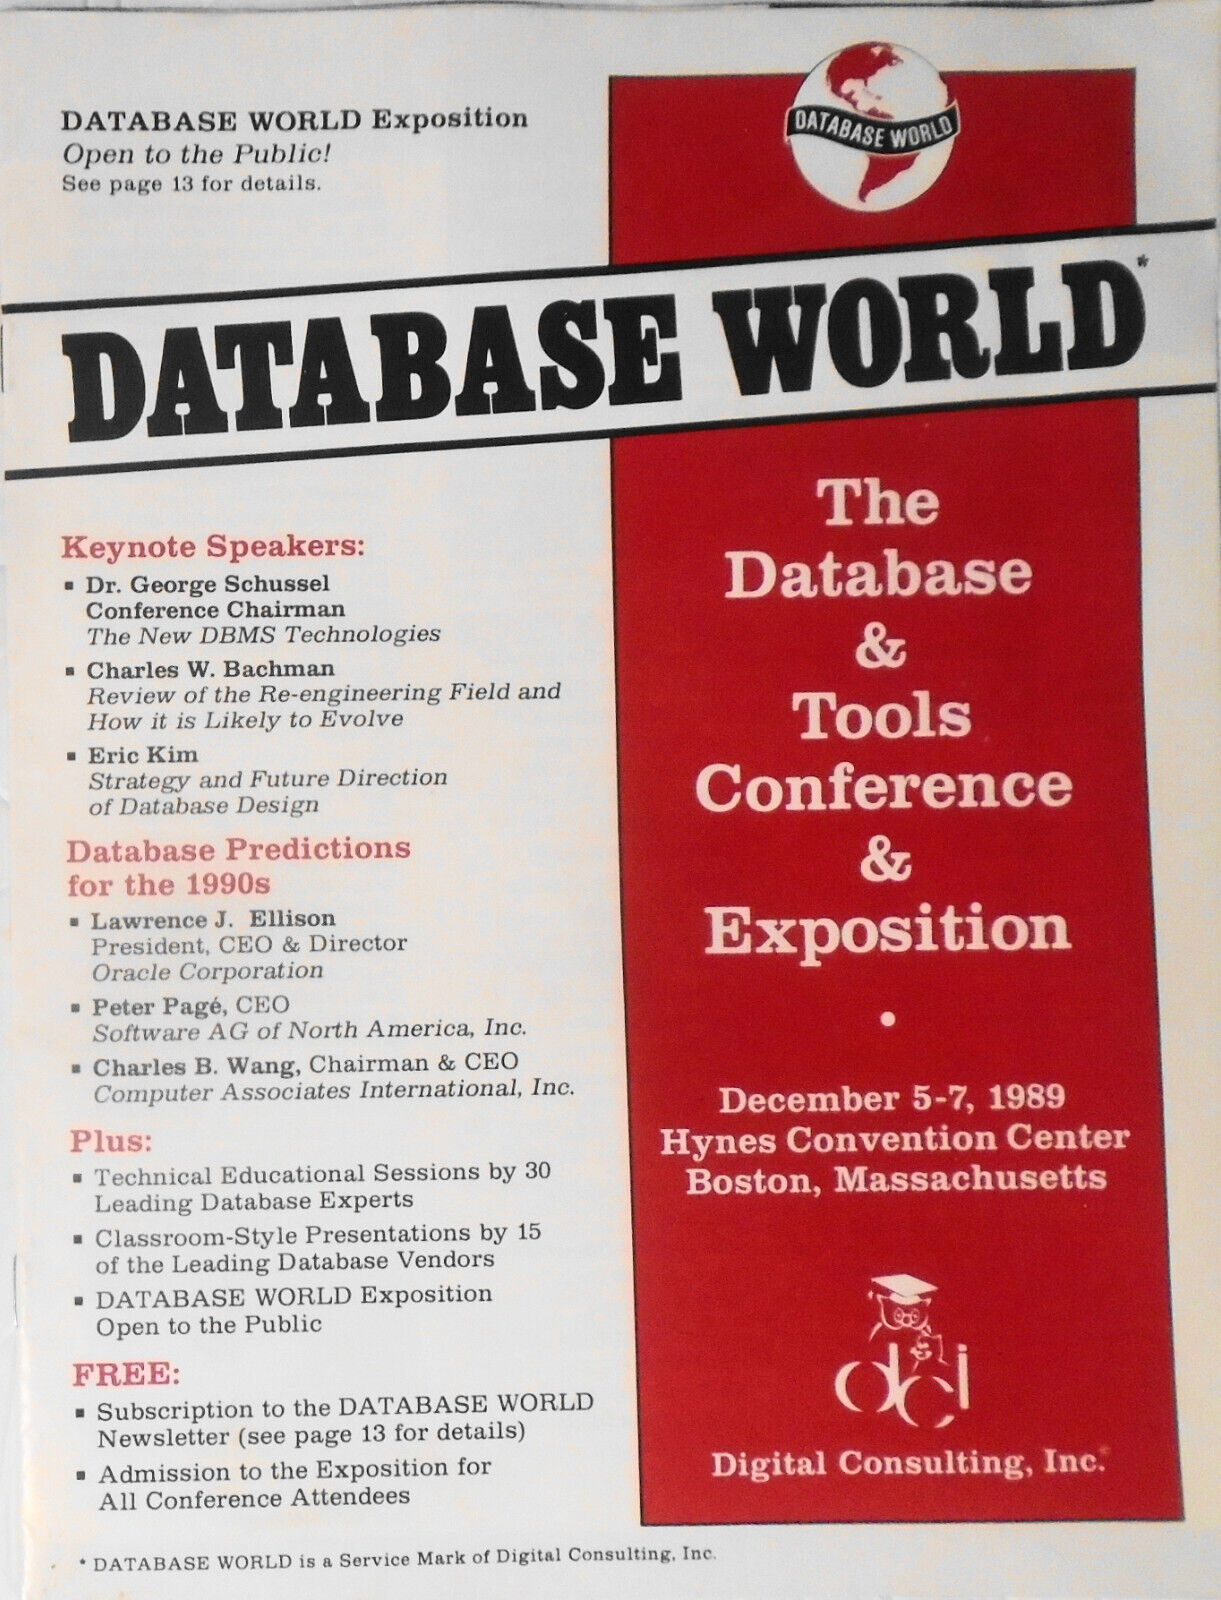 Database World Conference & Expo Program, Dec 1989, Boston - Larry Ellison et al